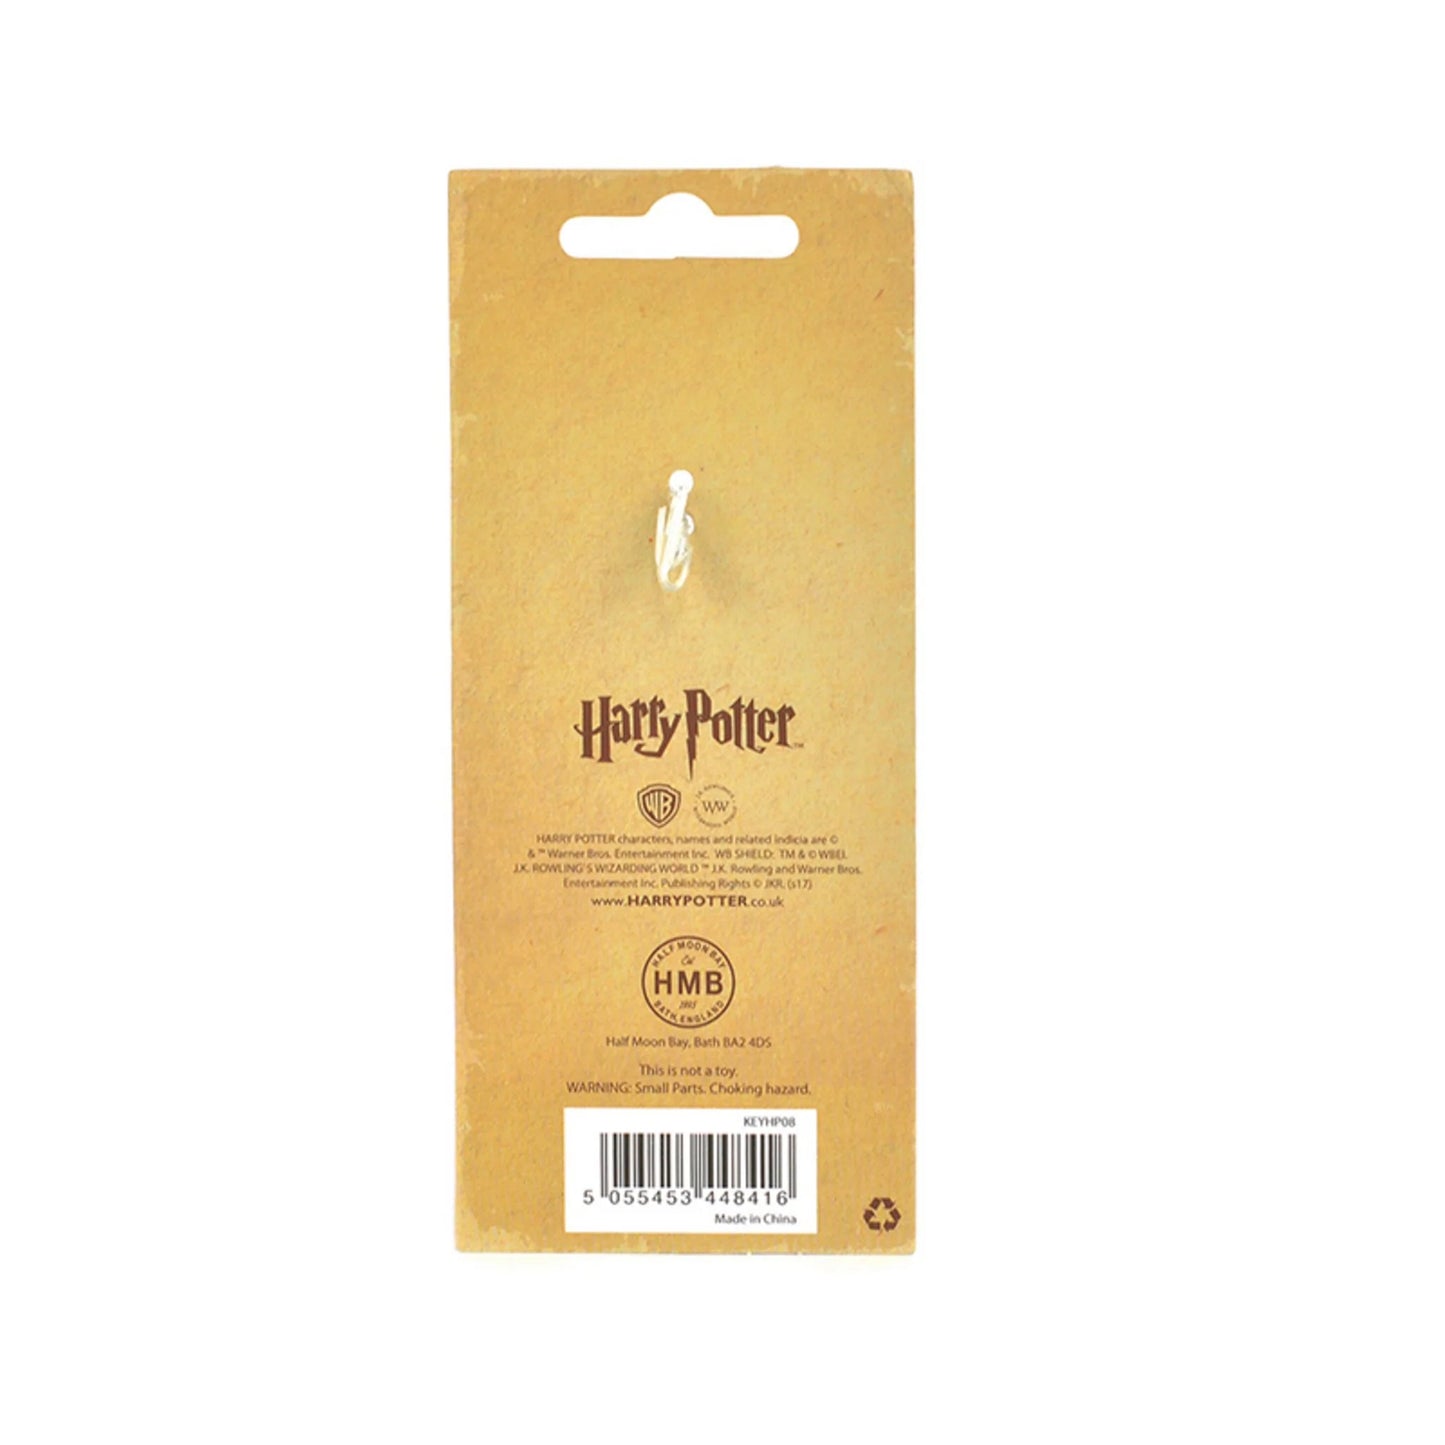 Porte-Clés Harry Potter - Platform 9¾